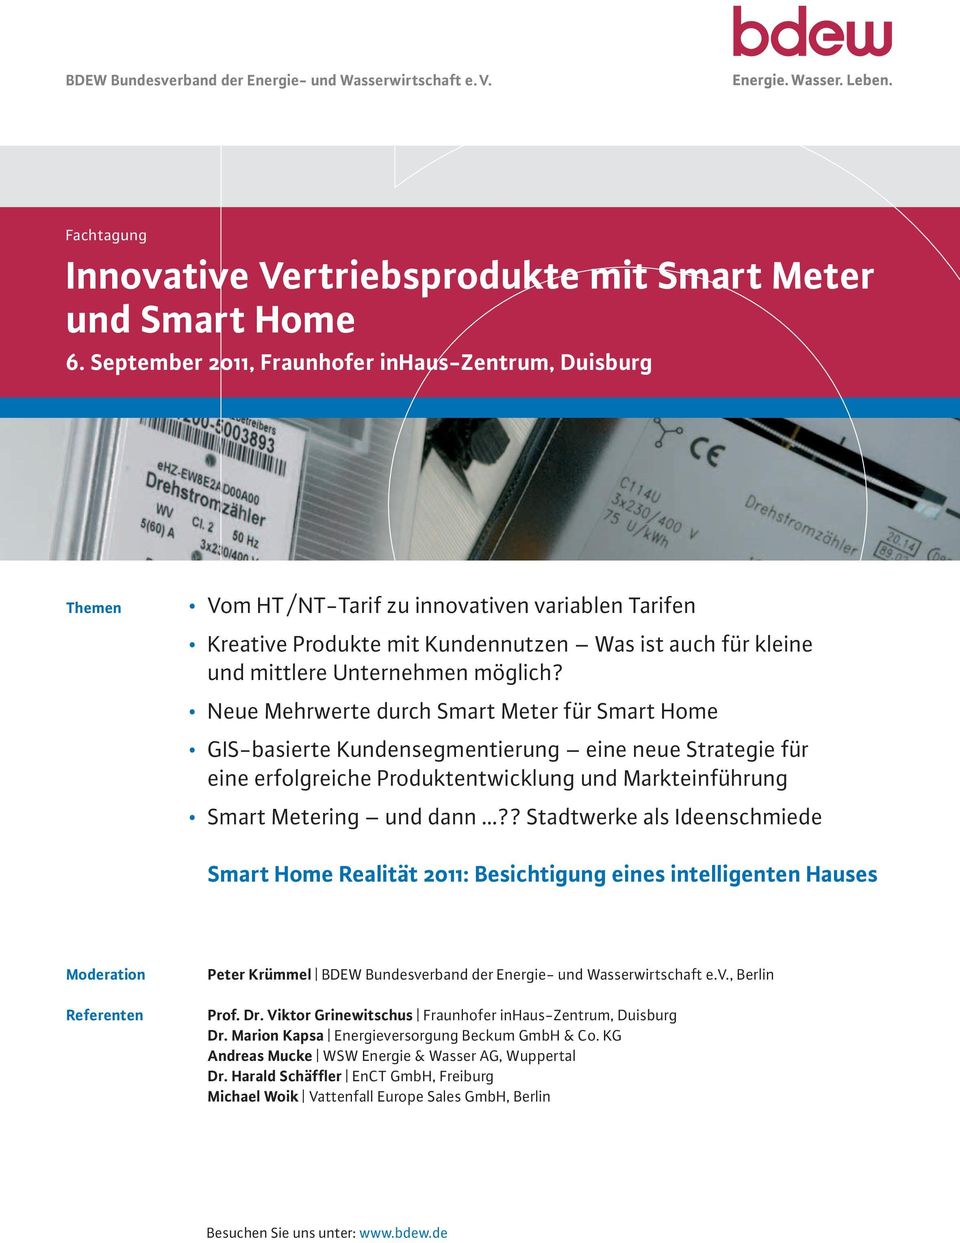 möglich? Neue Mehrwerte durch Smart Meter für Smart Home GIS-basierte Kundensegmentierung eine neue Strategie für eine erfolgreiche Produktentwicklung und Markteinführung Smart Metering und dann?